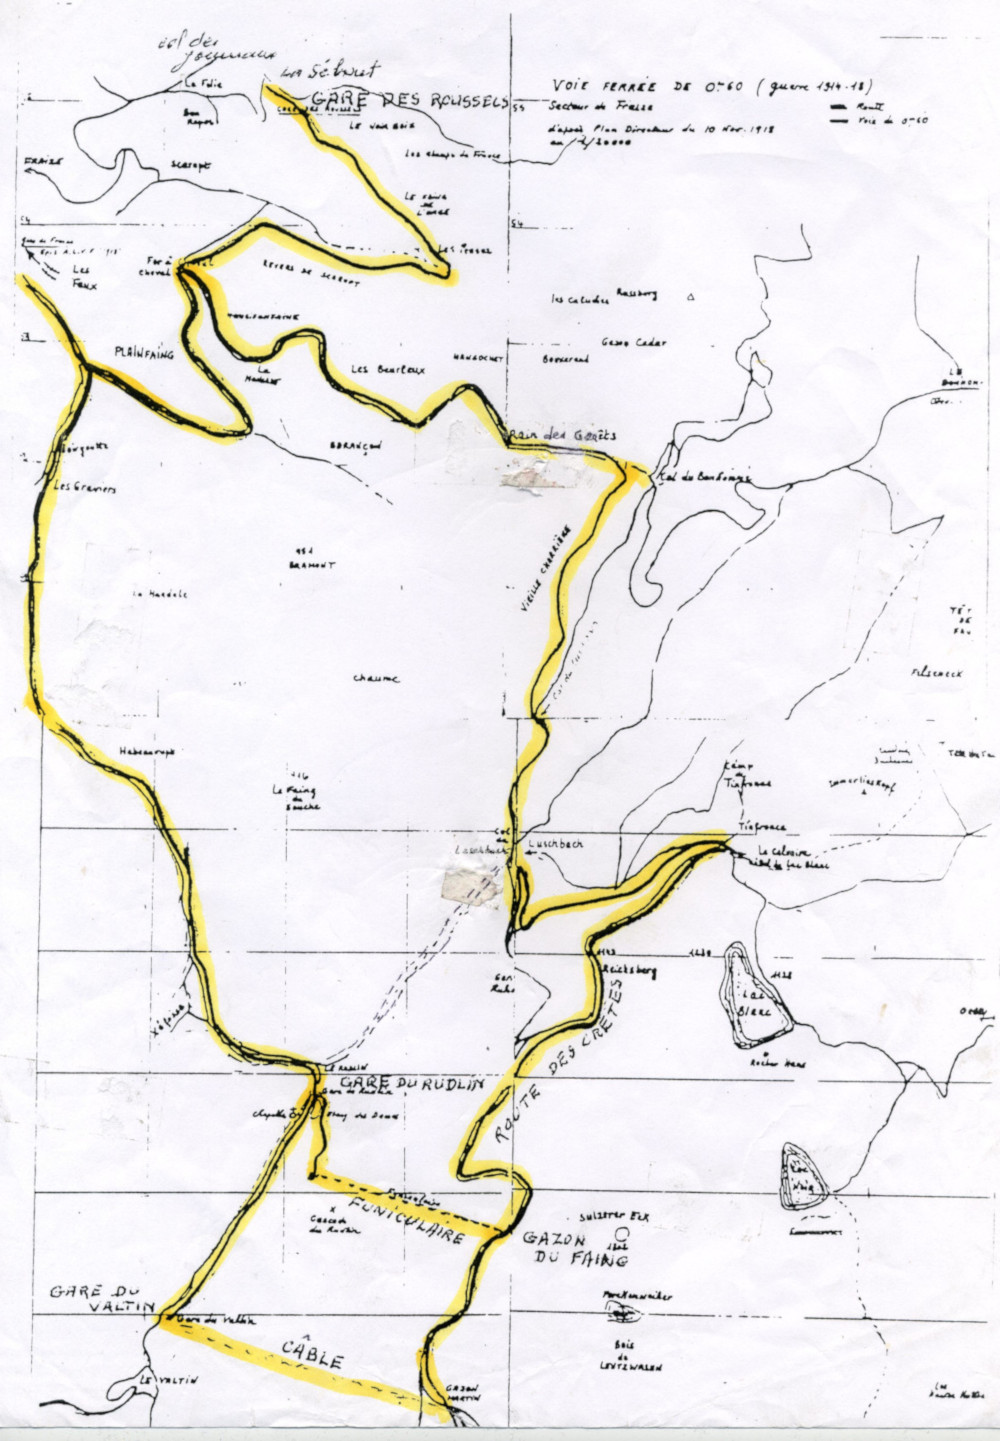 Le plan des voies du Tacot d'après le Plan Directeur du 10 novembre 1918.
					La construction s'est étalée entre le second semestre 1915 et le début 1916 ; le démontage a débuté dès 1919.